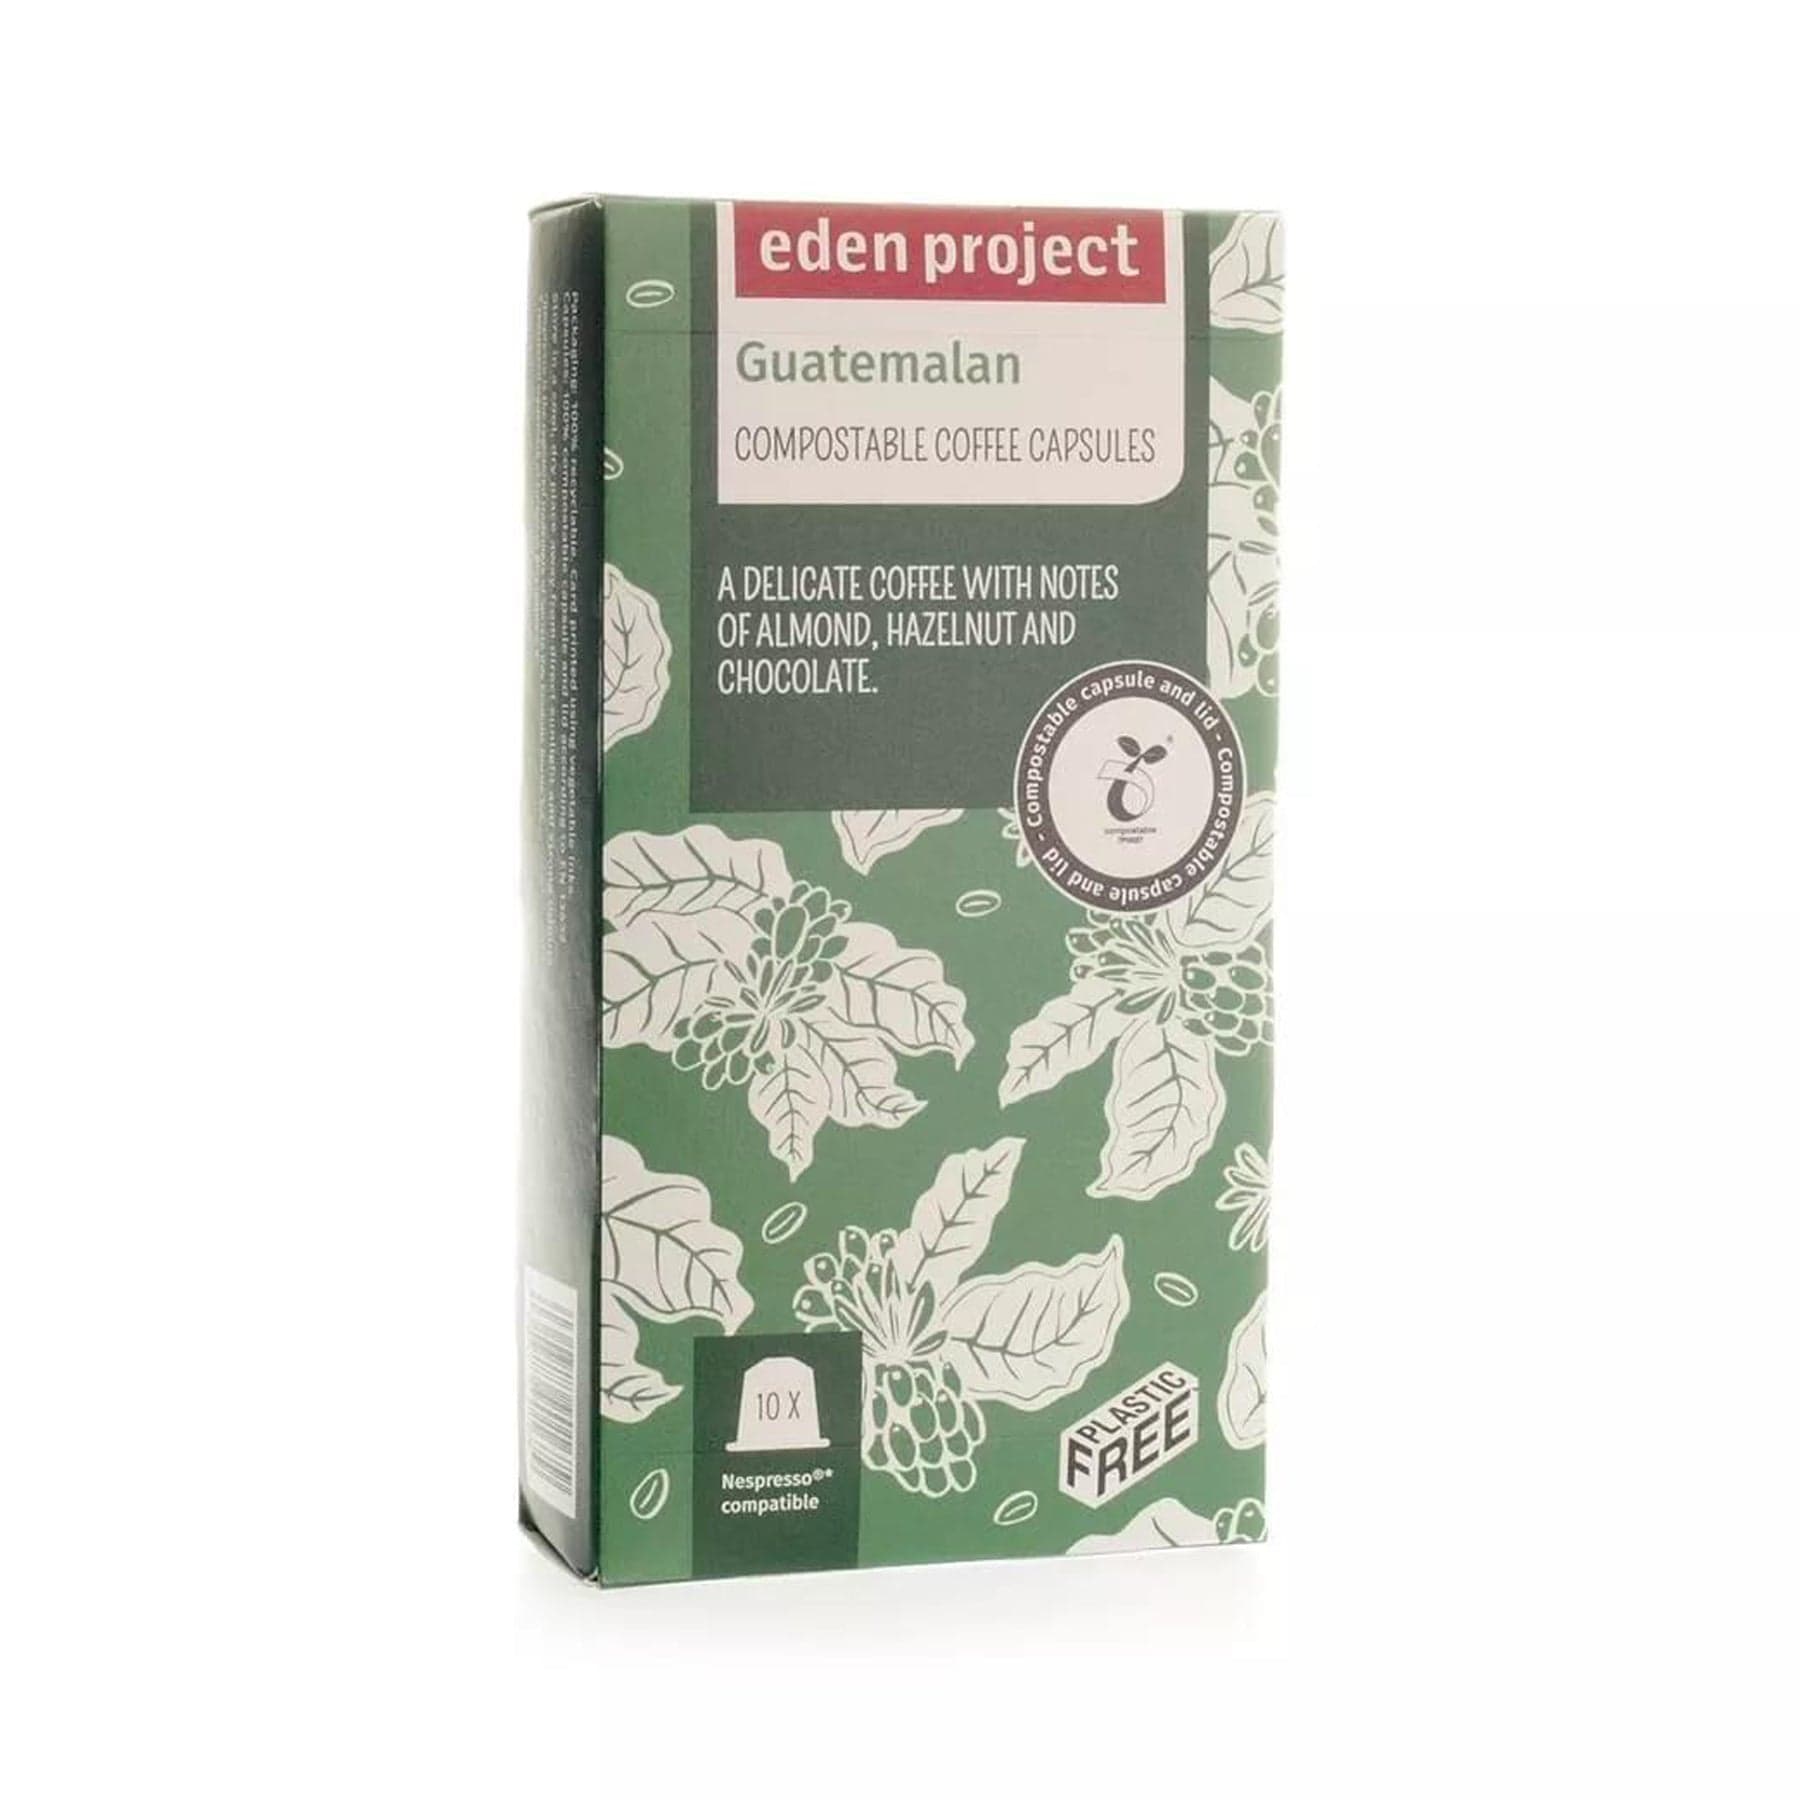 10 Guatemalan biodegradable coffee capsules